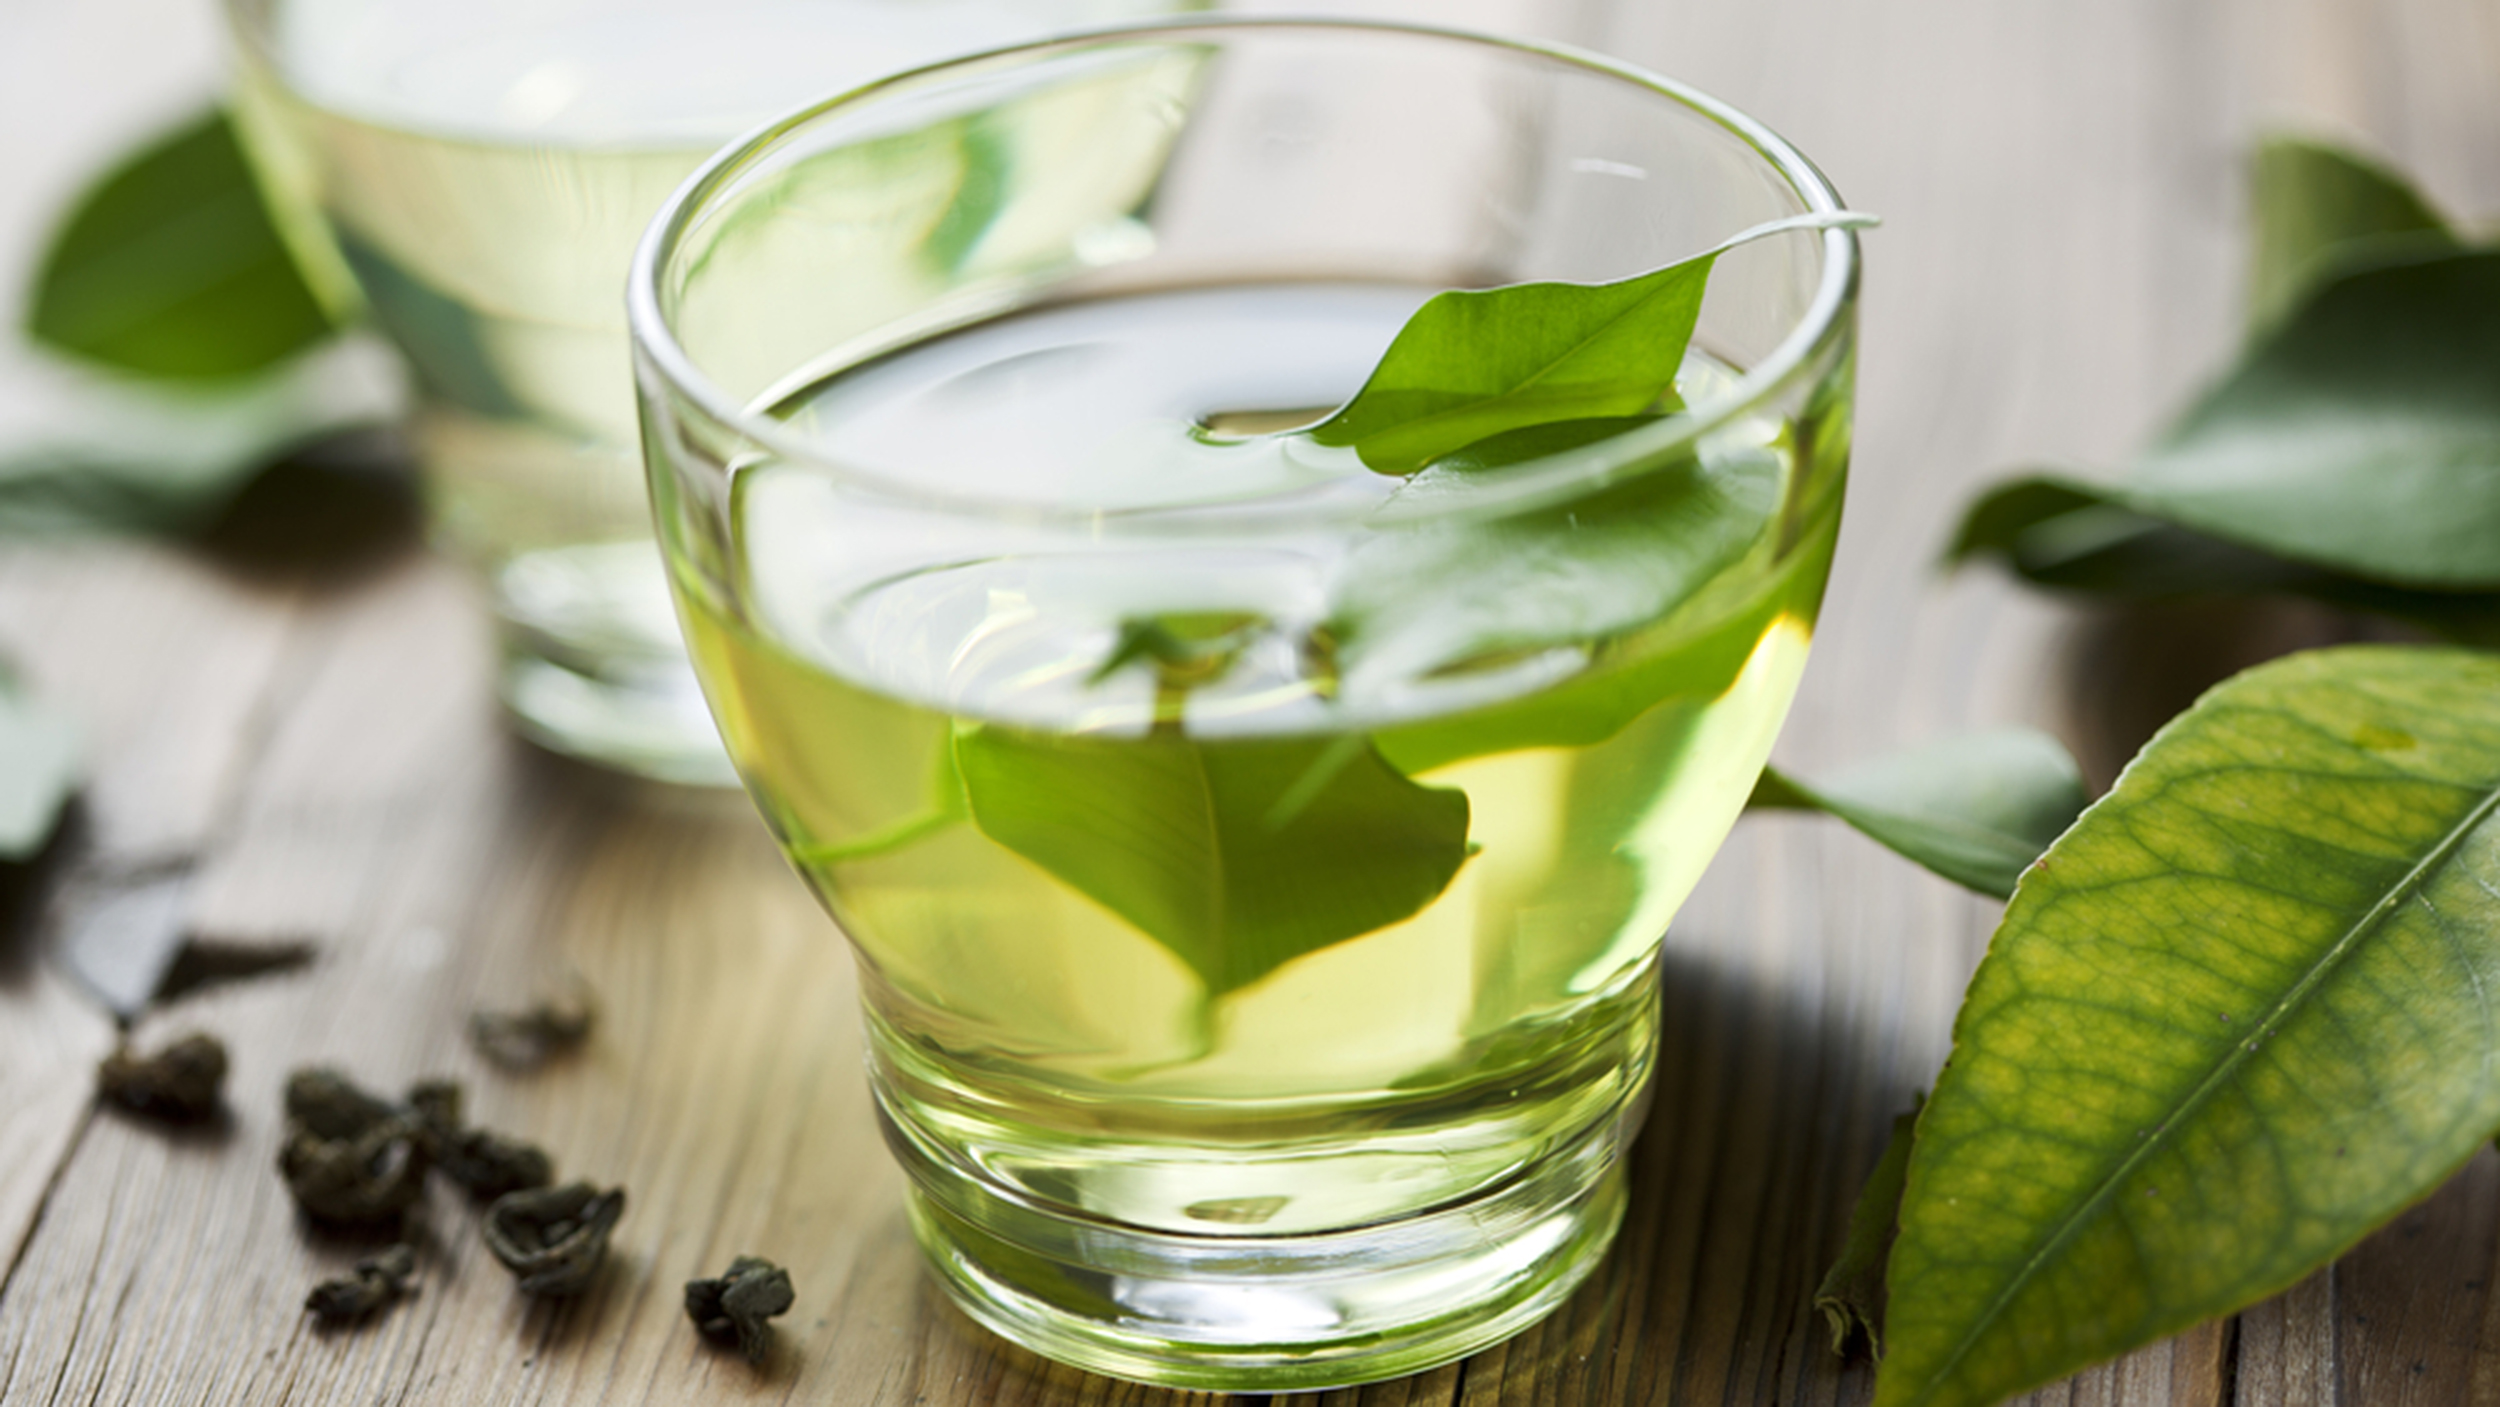 5 მიზეზი - რატომ უნდა წაისვათ მწვანე ჩაის ნაყენი სახეზე?